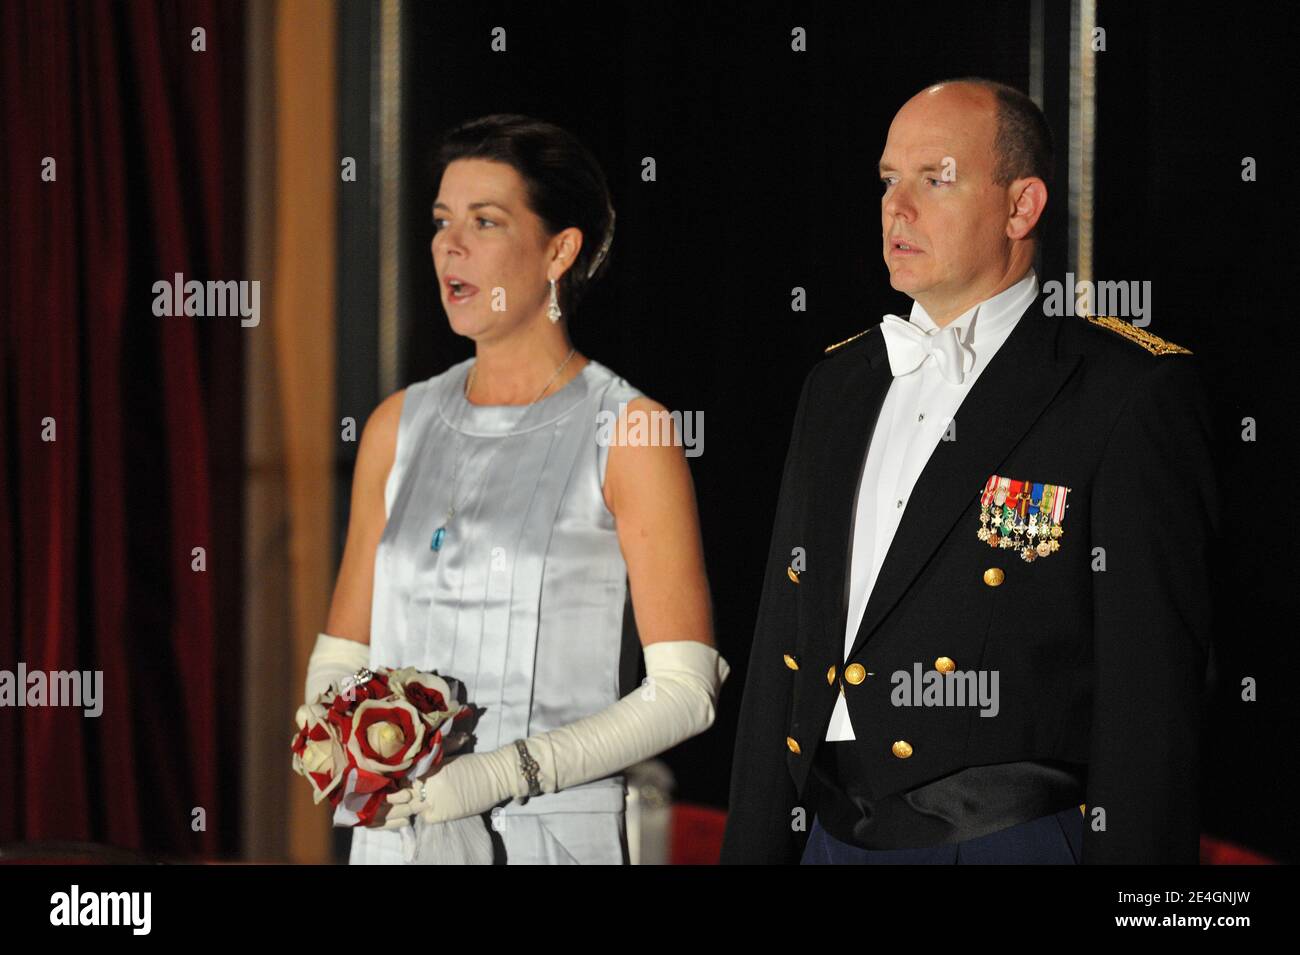 Fürst Albert II. Von Monaco und Prinzessin Caroline von Hannover kommen am 19. November 2009 zur Opera Turandot Gala im Rahmen der Feierlichkeiten zum Nationalfeiertag in Monaco. Foto von Nebinger-Orban/ABACAPRESS.COM Stockfoto